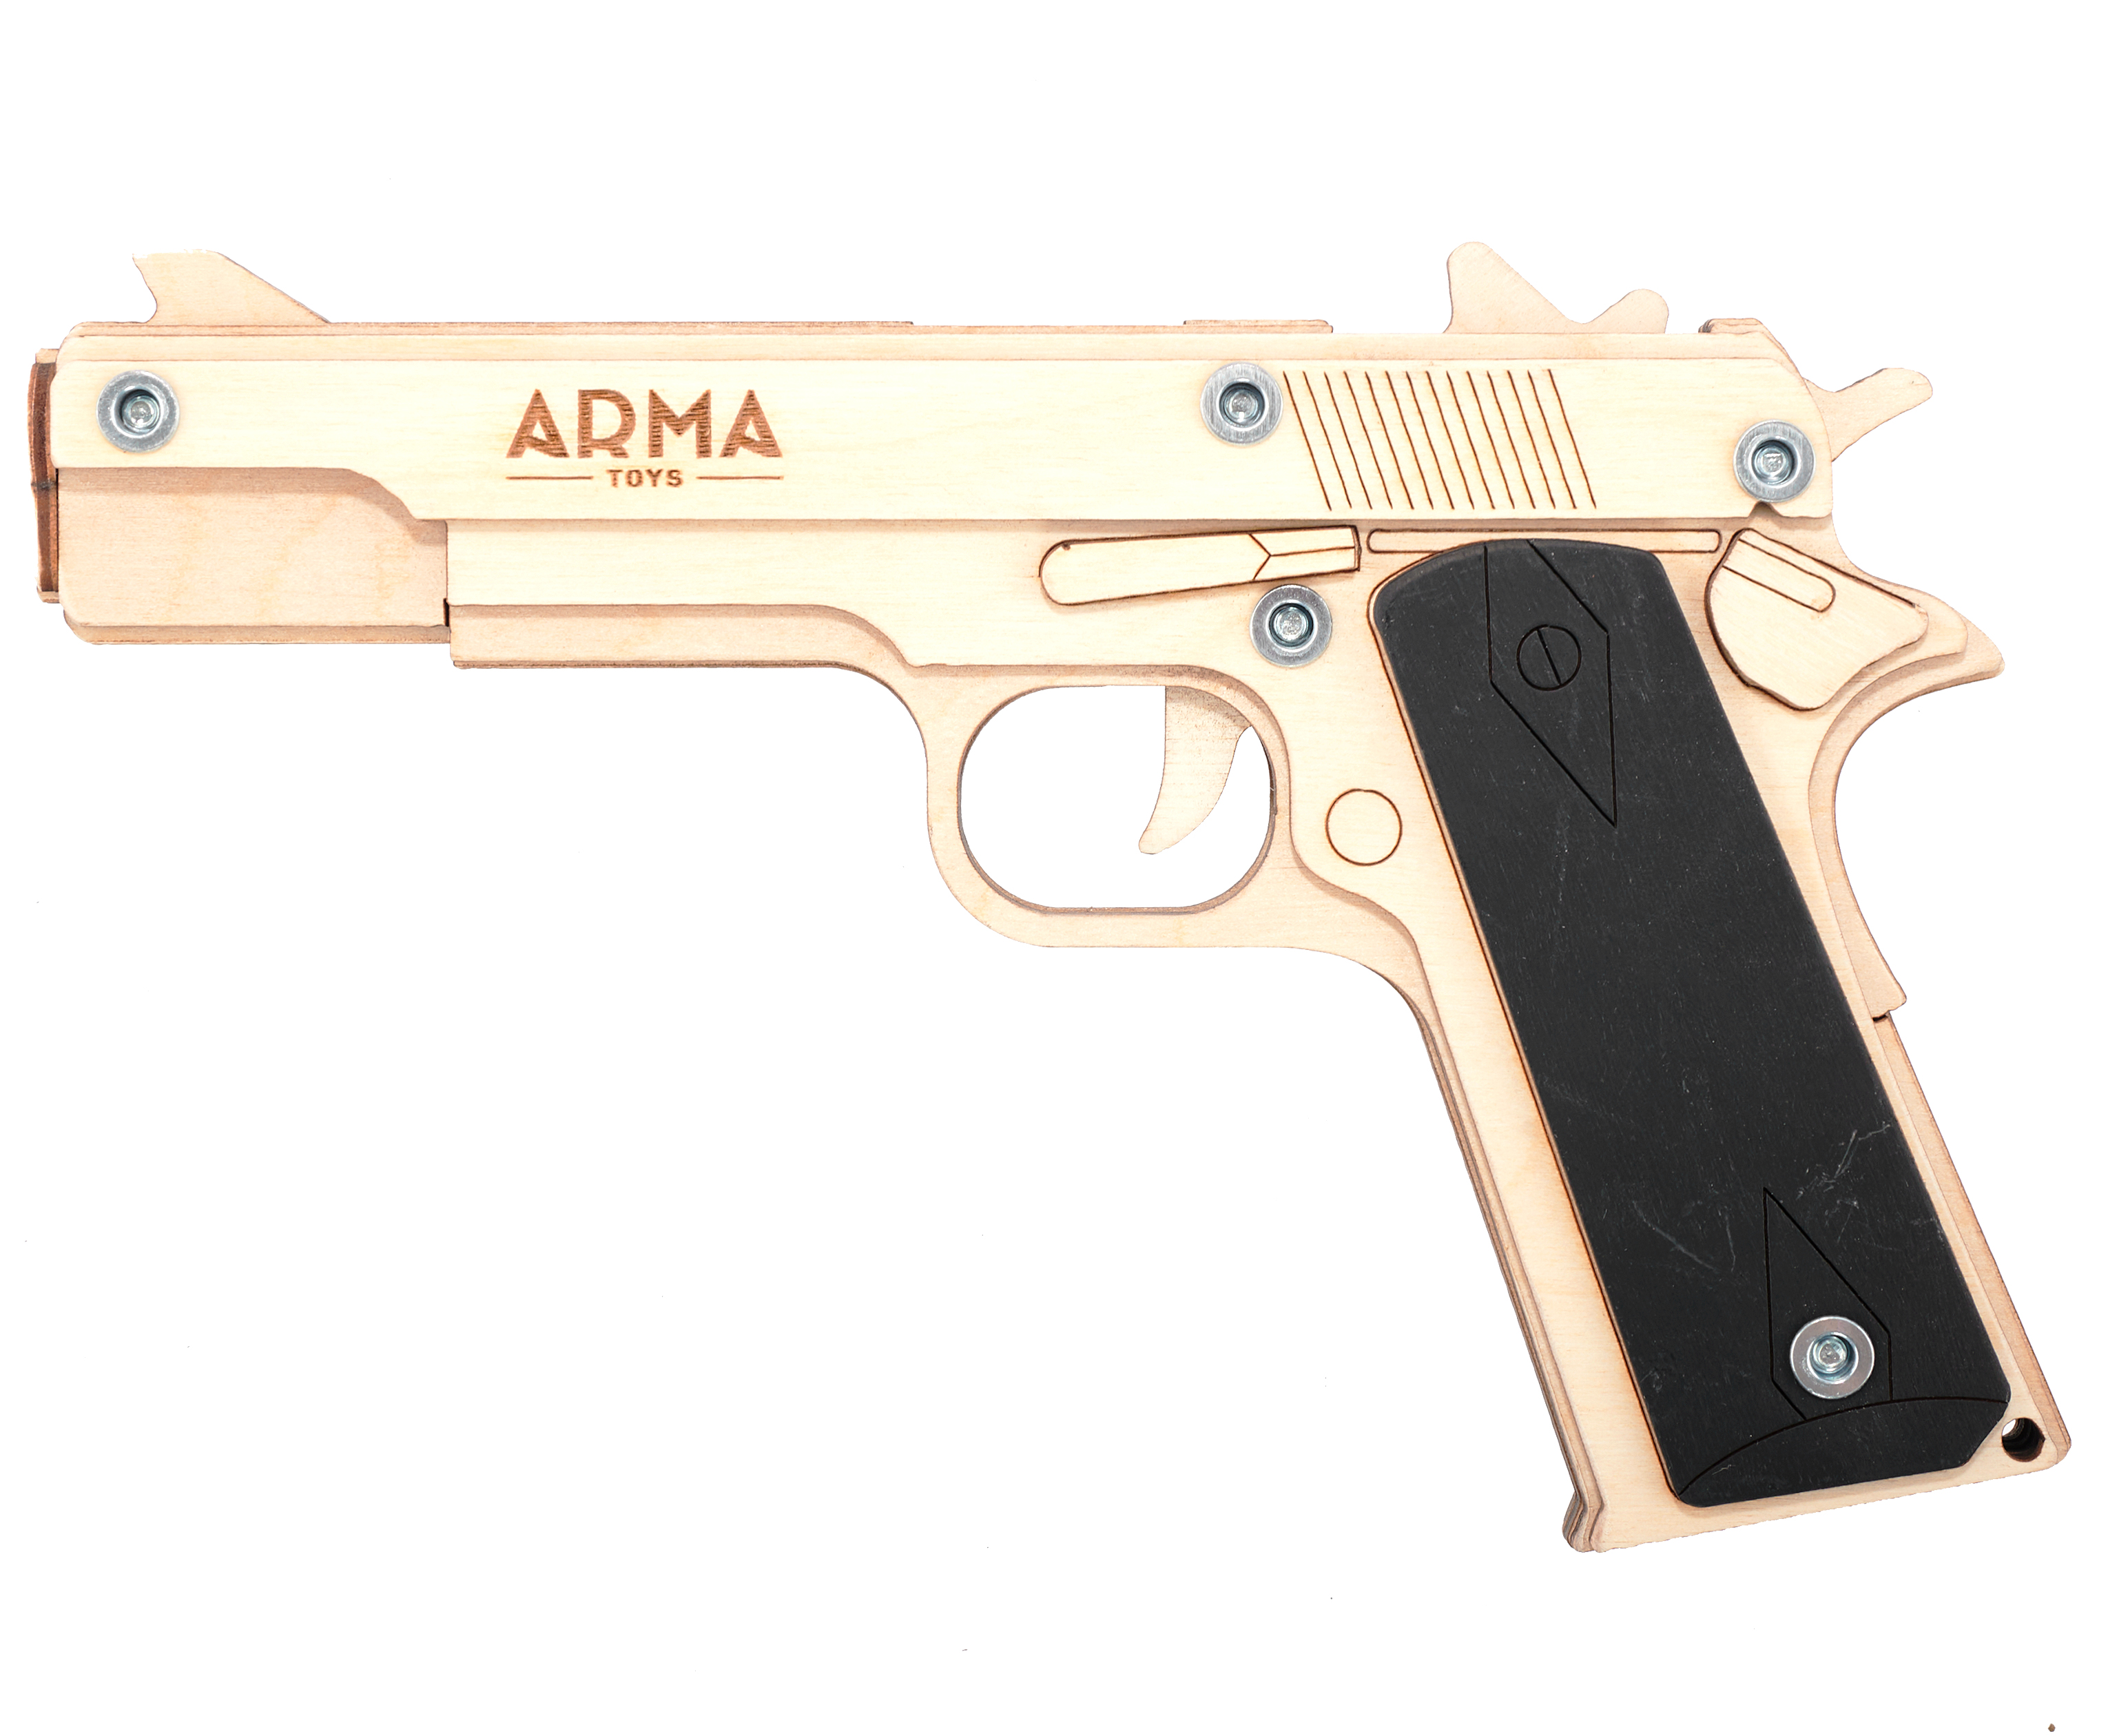 Резинкострел игрушечный Arma toys пистолет Кольт макет, Colt 1911, AT022 резинкострел игрушечный arma toys пистолет glock макет compact atl001